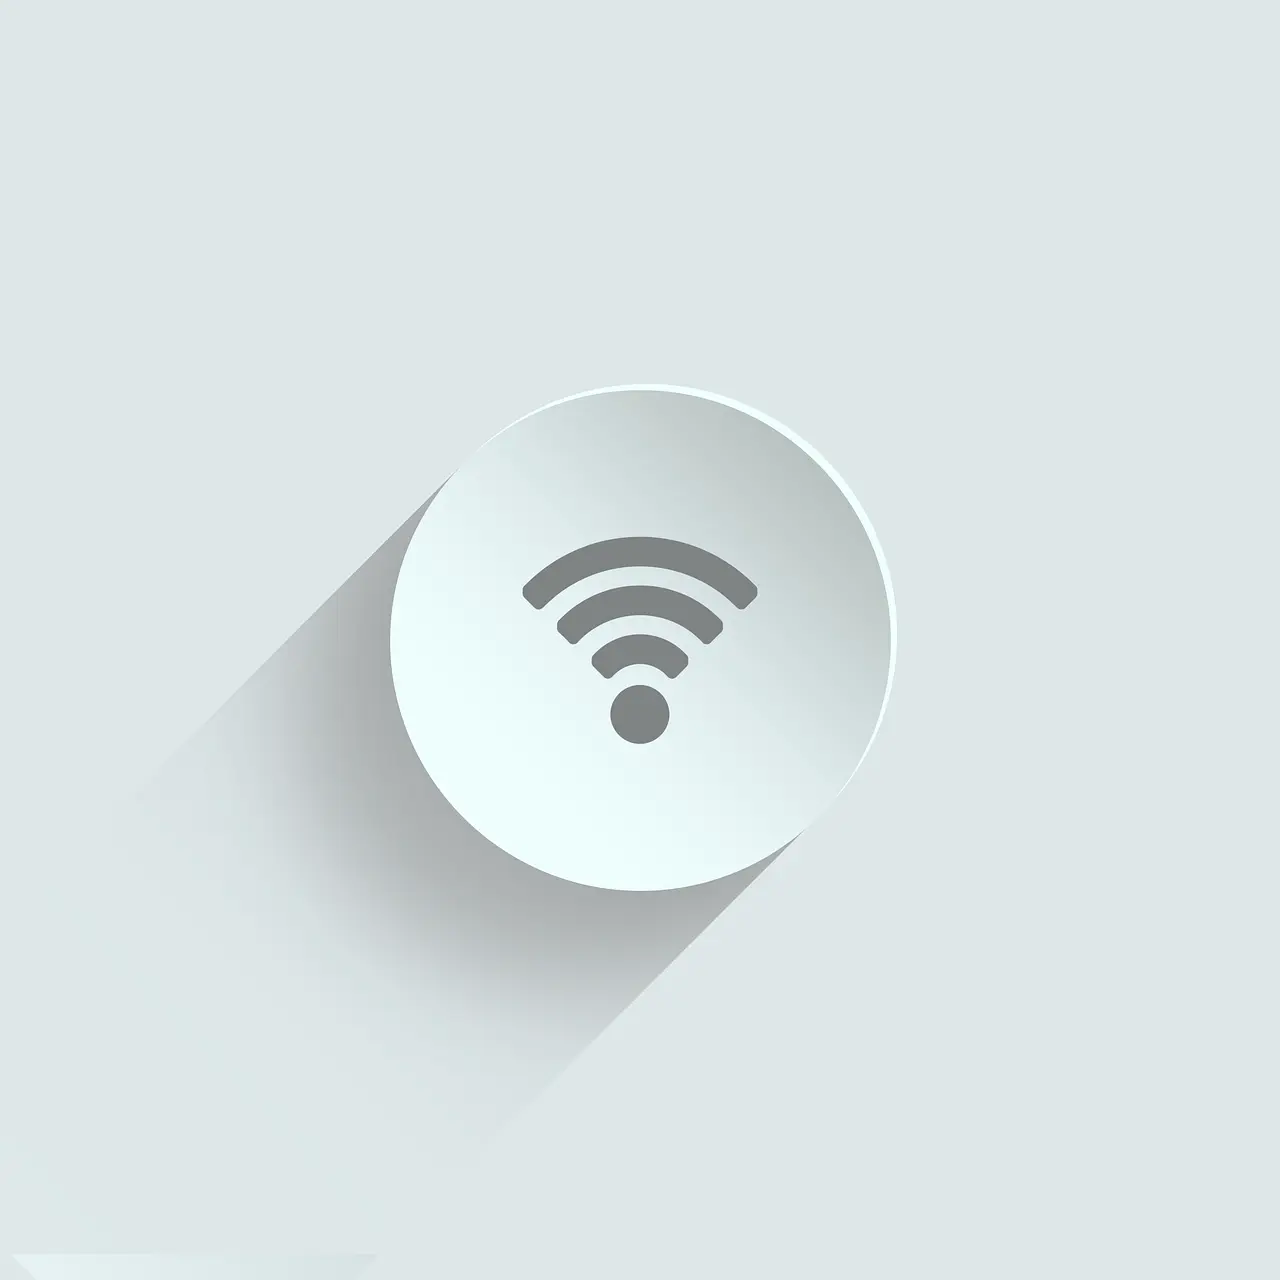 Wi-Fi Direct co to jest i co jest potrzebne do jego użycia